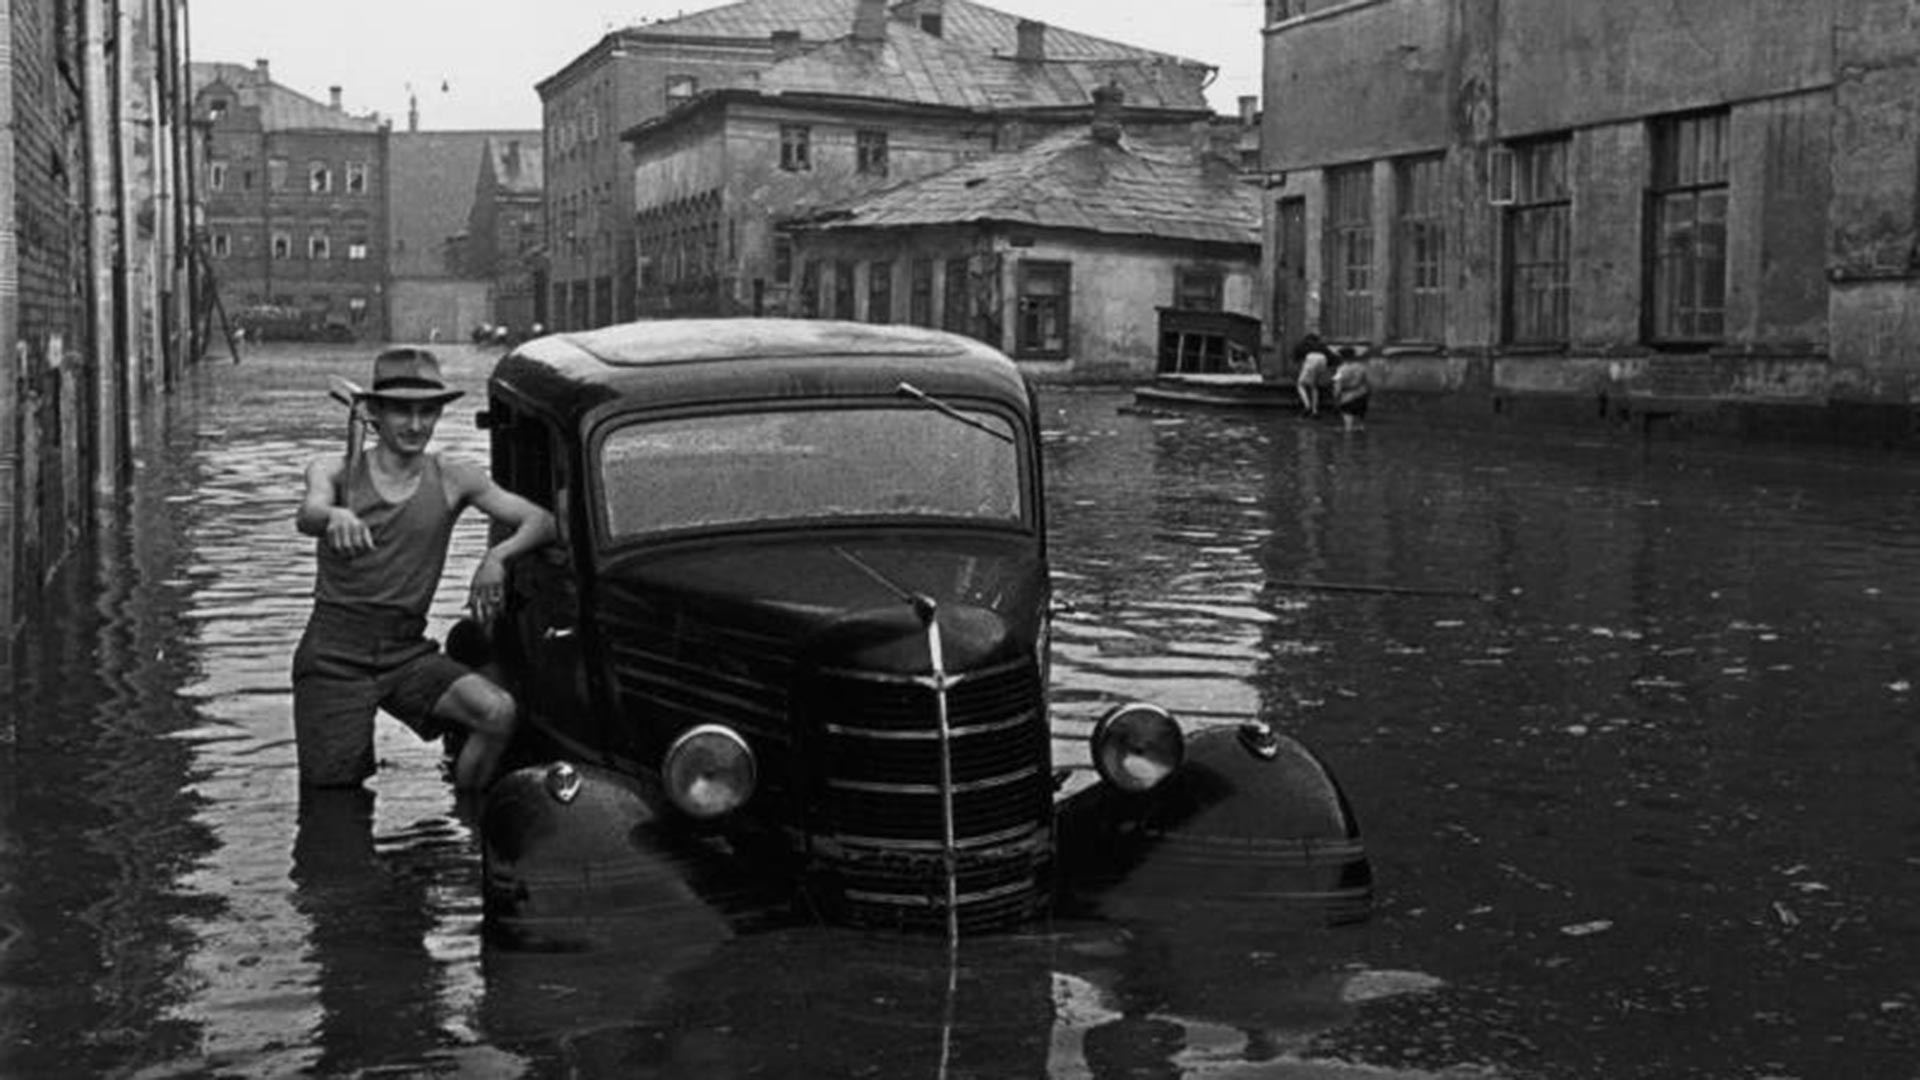 Poplava na ulicama Moskve poslije proloma oblaka u svibnju 1949.

